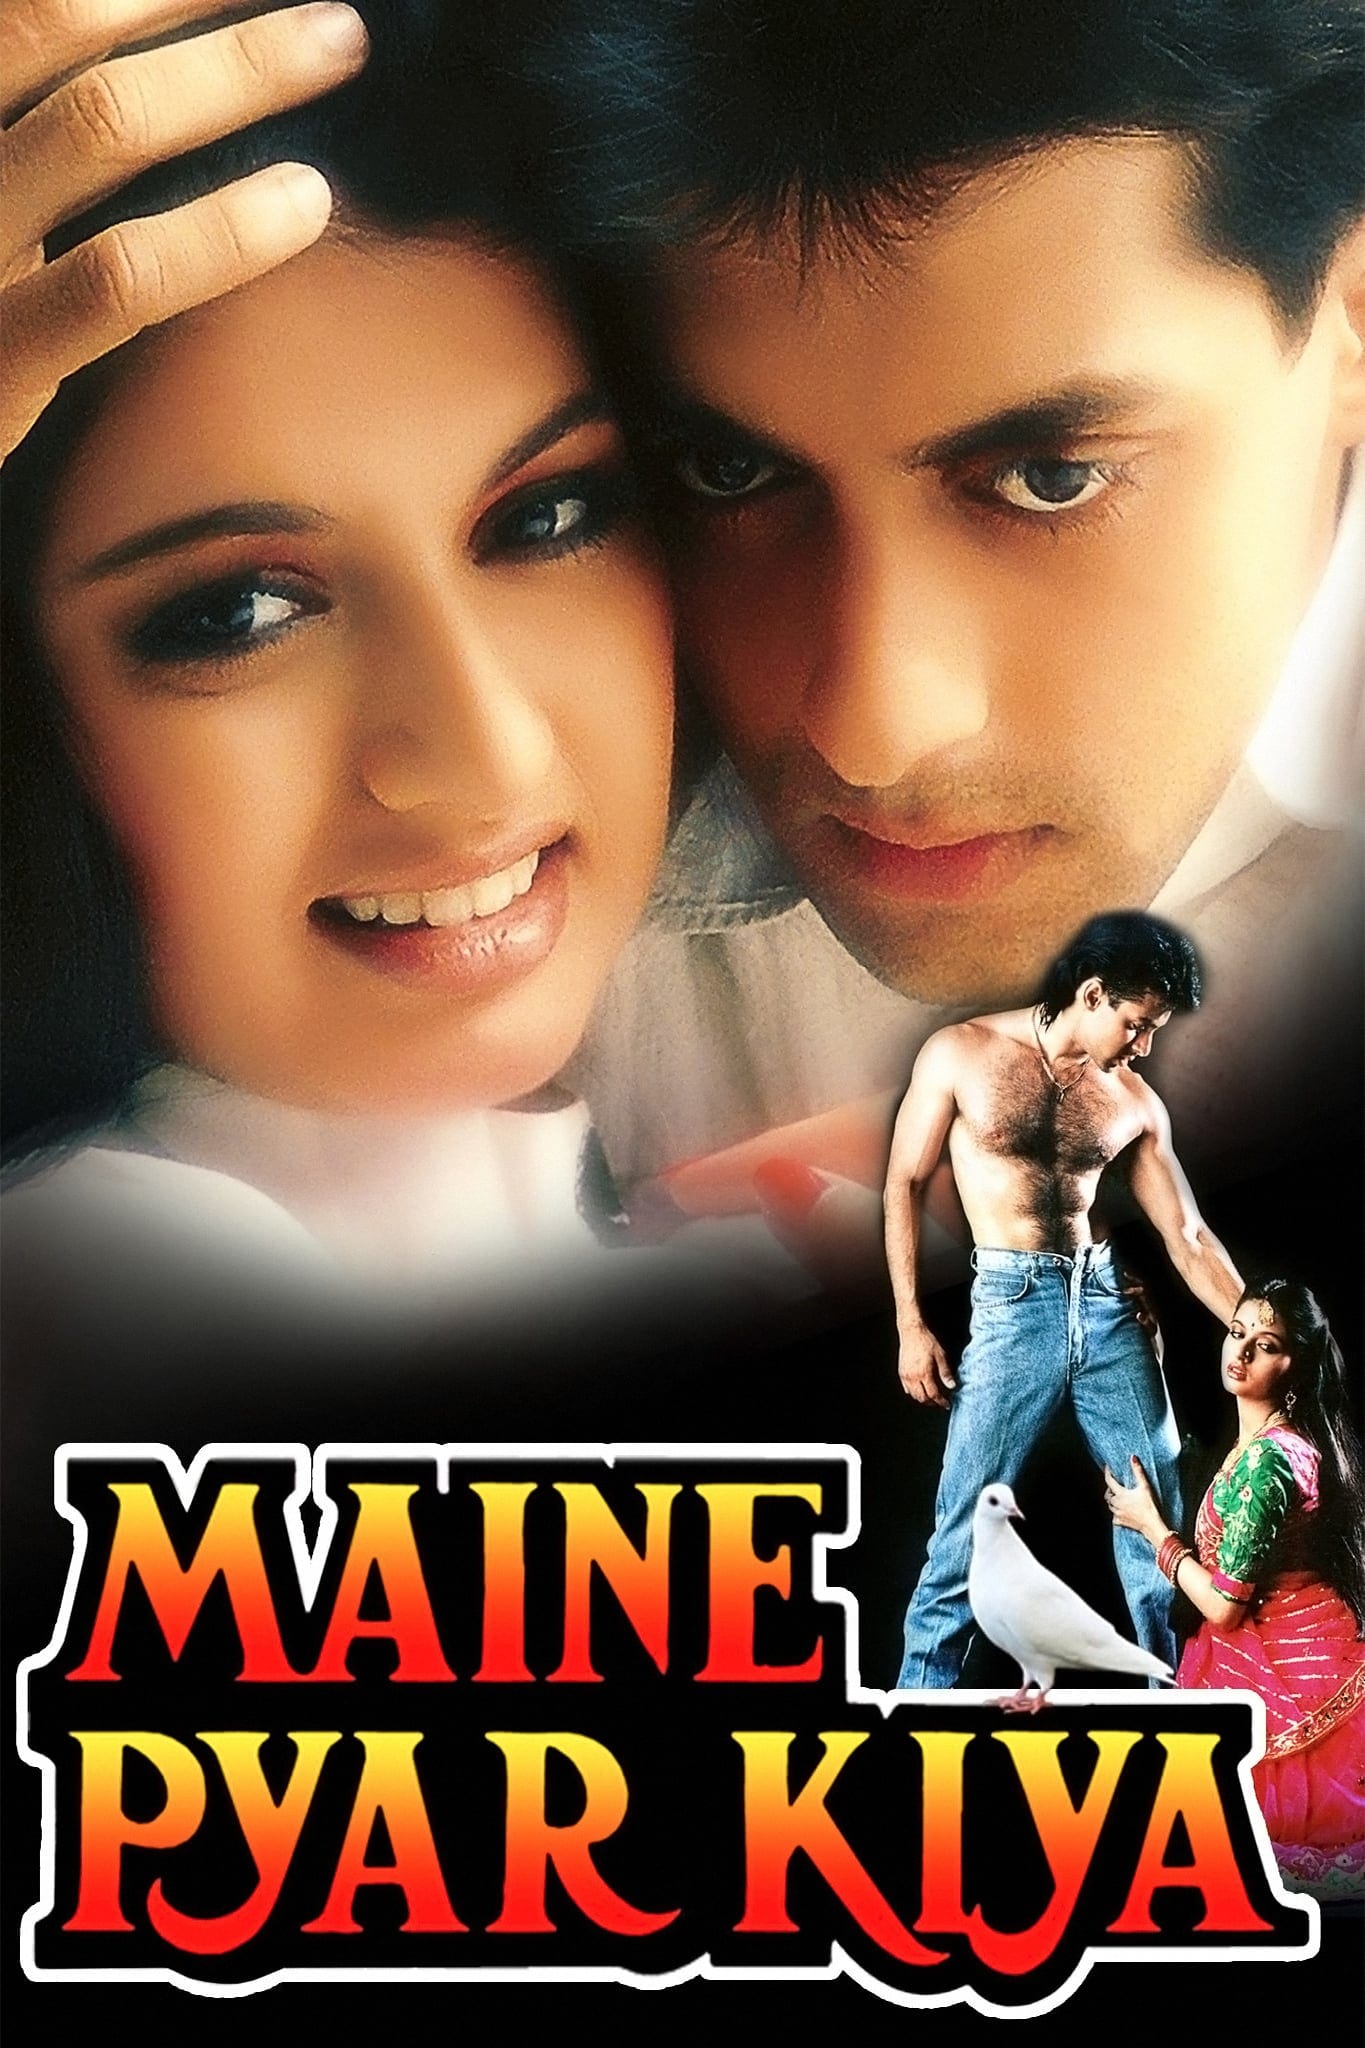 Poster for the movie "Maine Pyar Kiya"